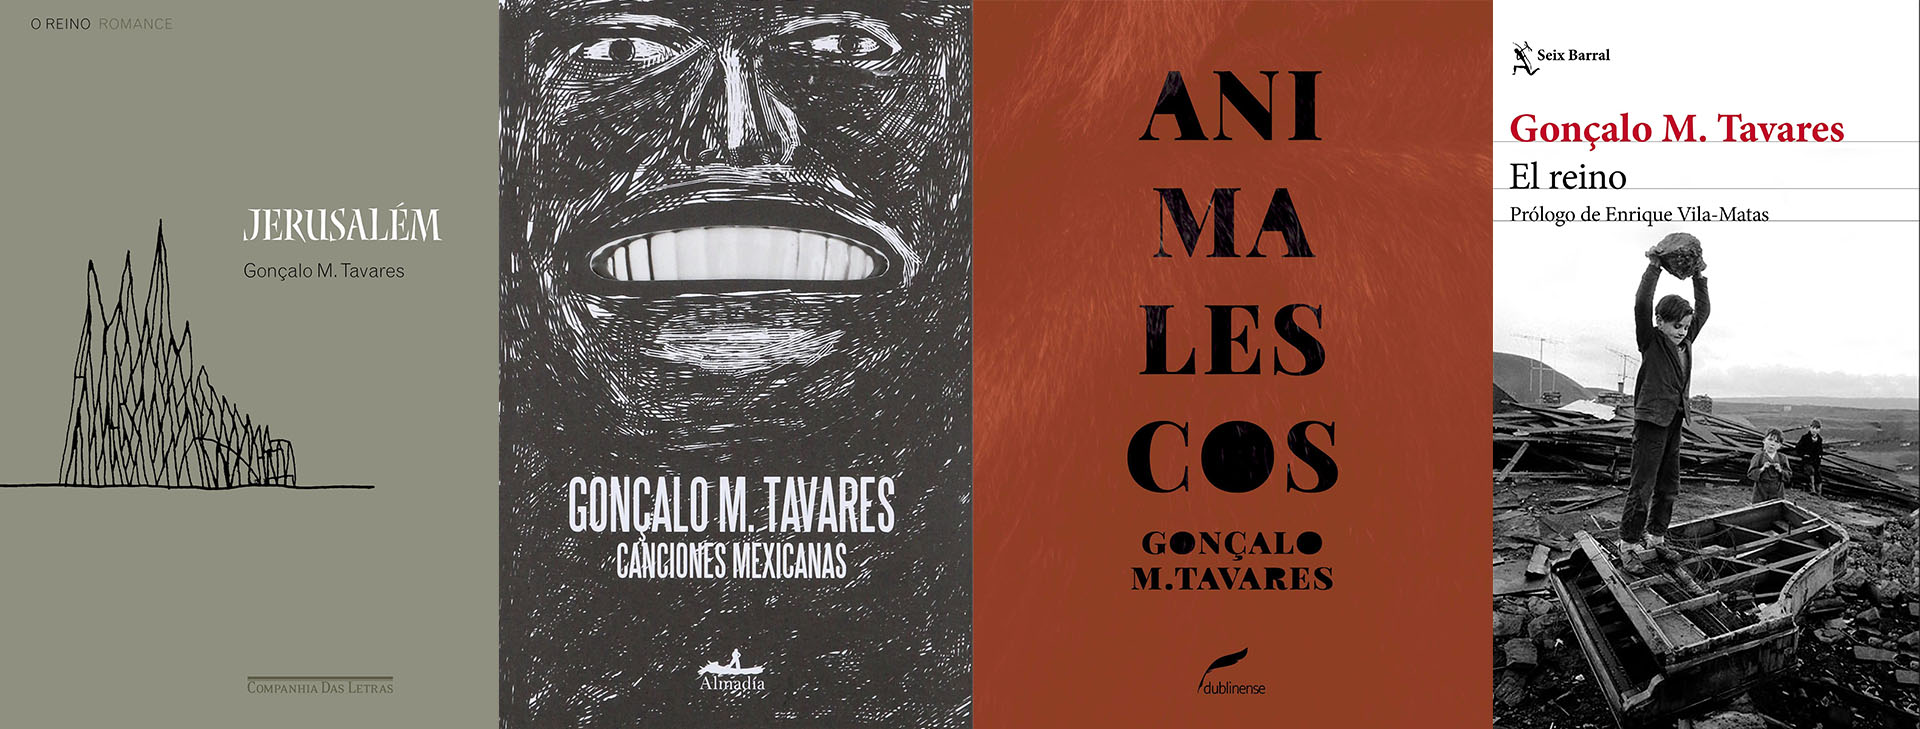 Otros títulos de Gonçalo Tavares en español 